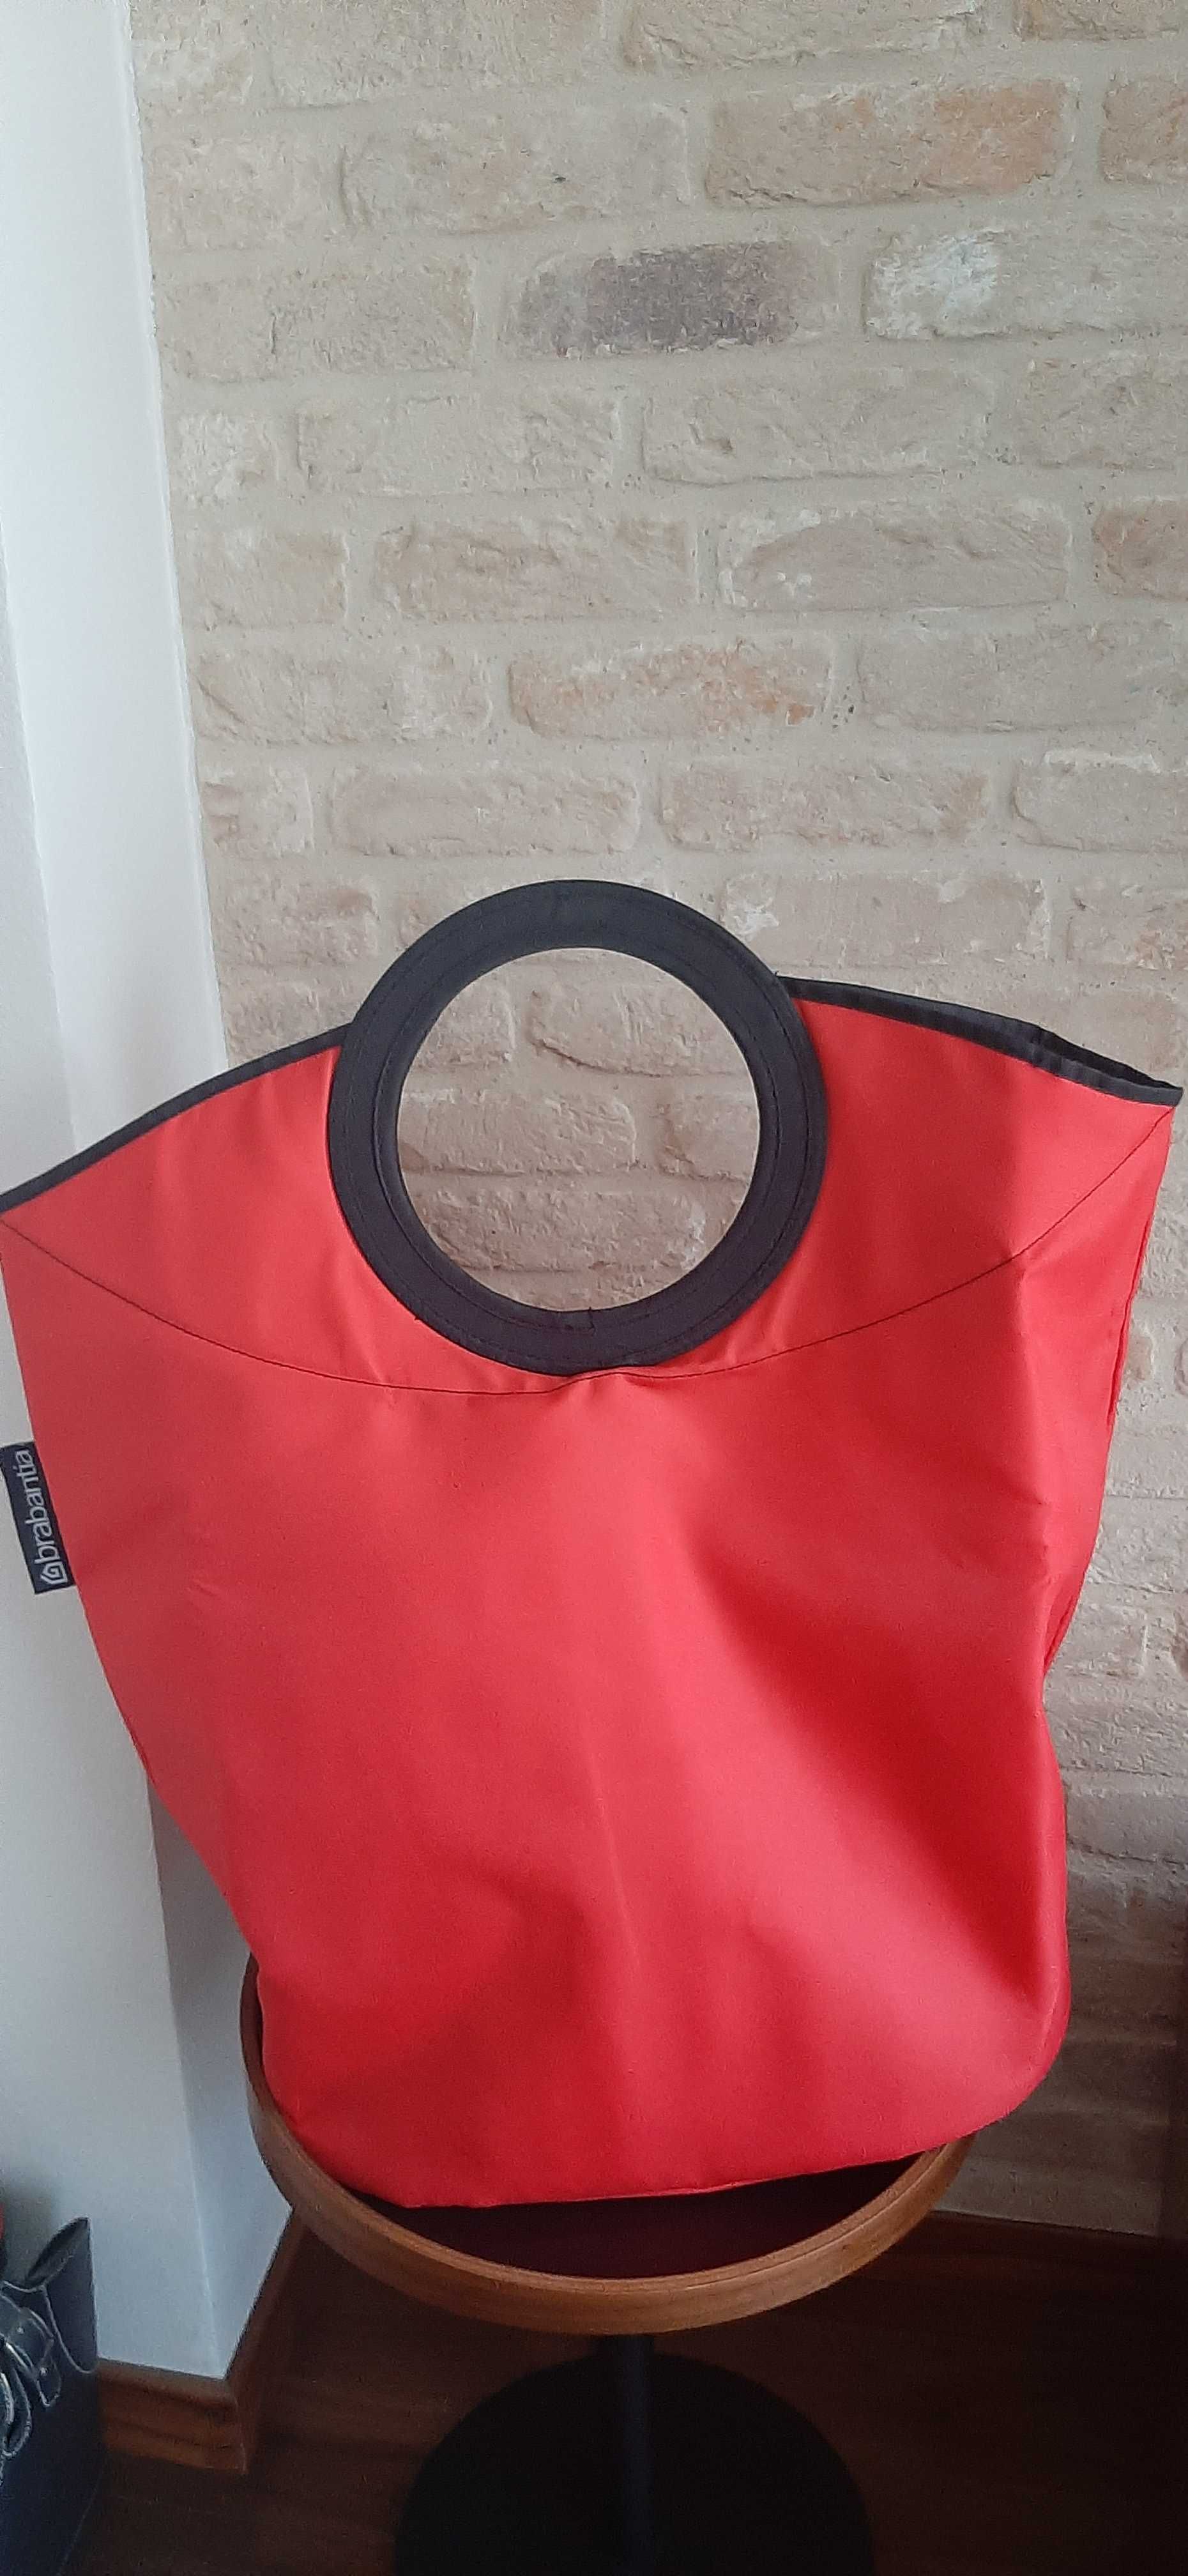 Składany kosz/pojemnik/ na bieliznę/pranie Brabantia Laundry czerwony